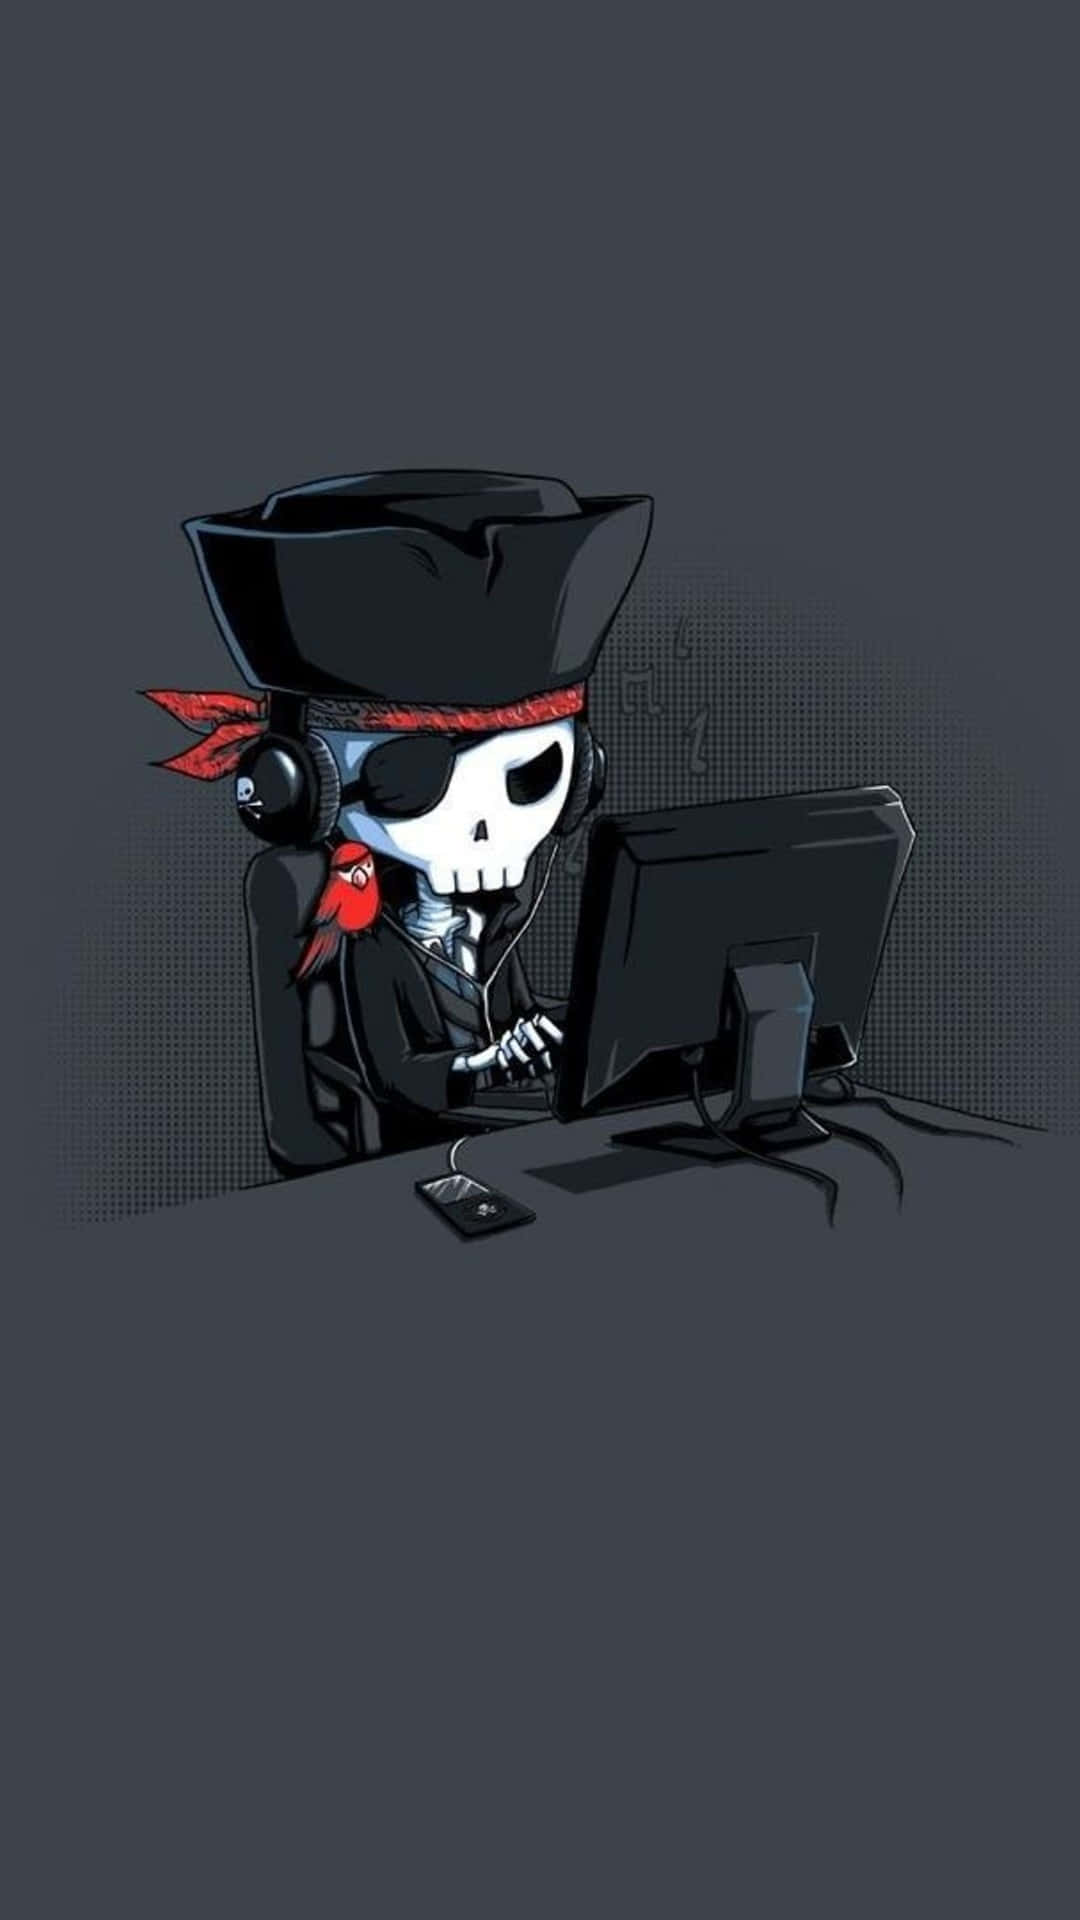 Pirate Skull Hackerat Computer Wallpaper